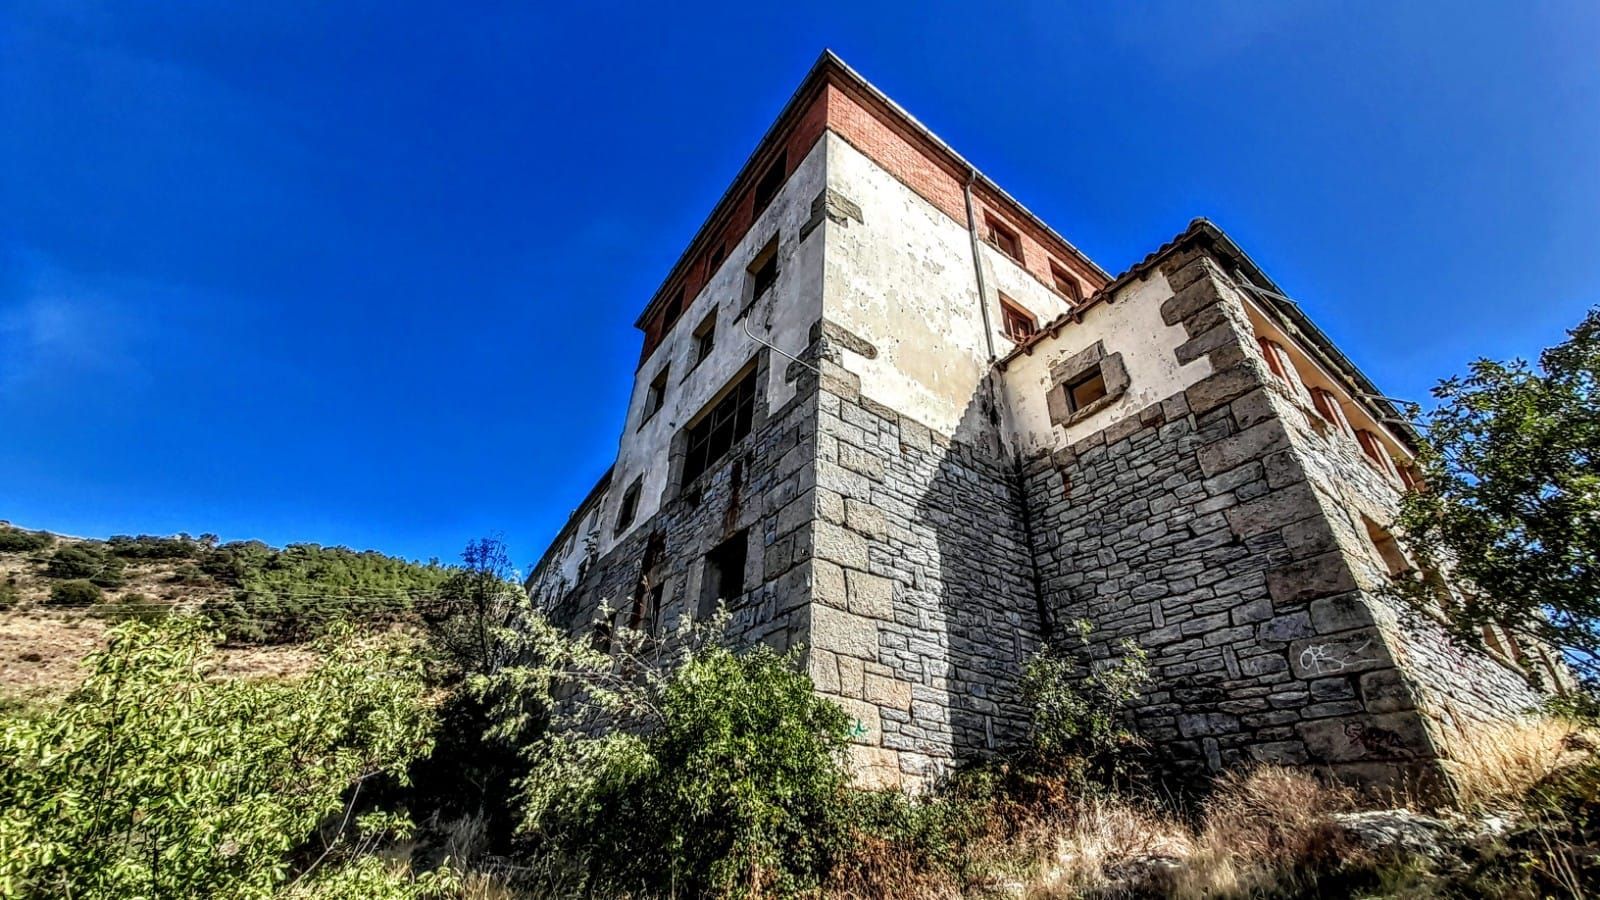 Imágenes del pueblo vacío de Zamora, con escuela, farmacia y cuartel, que se vende por 240.000 euros